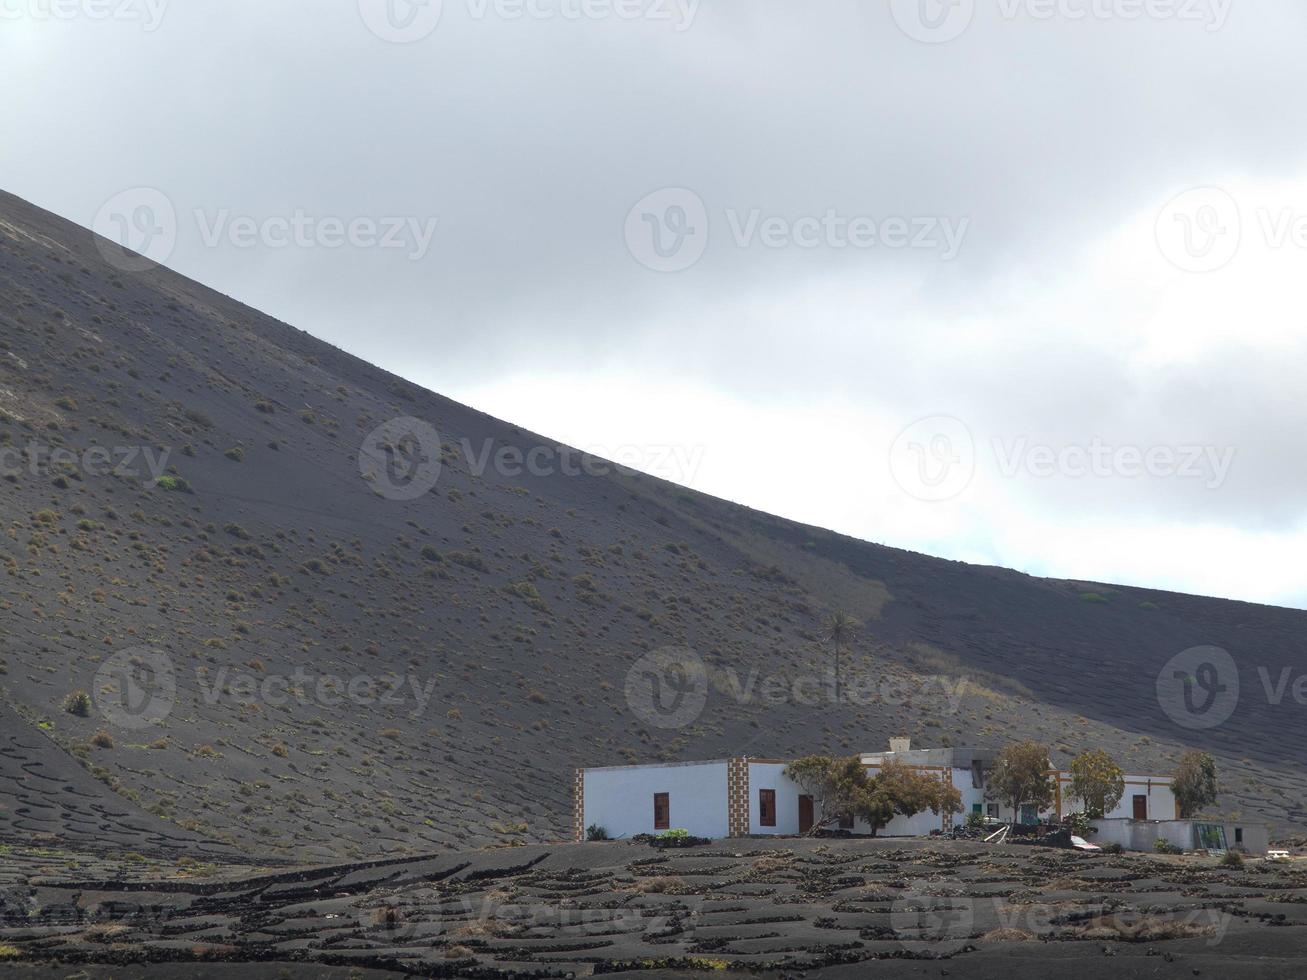 ilha do vulcão lanzarote na espanha foto